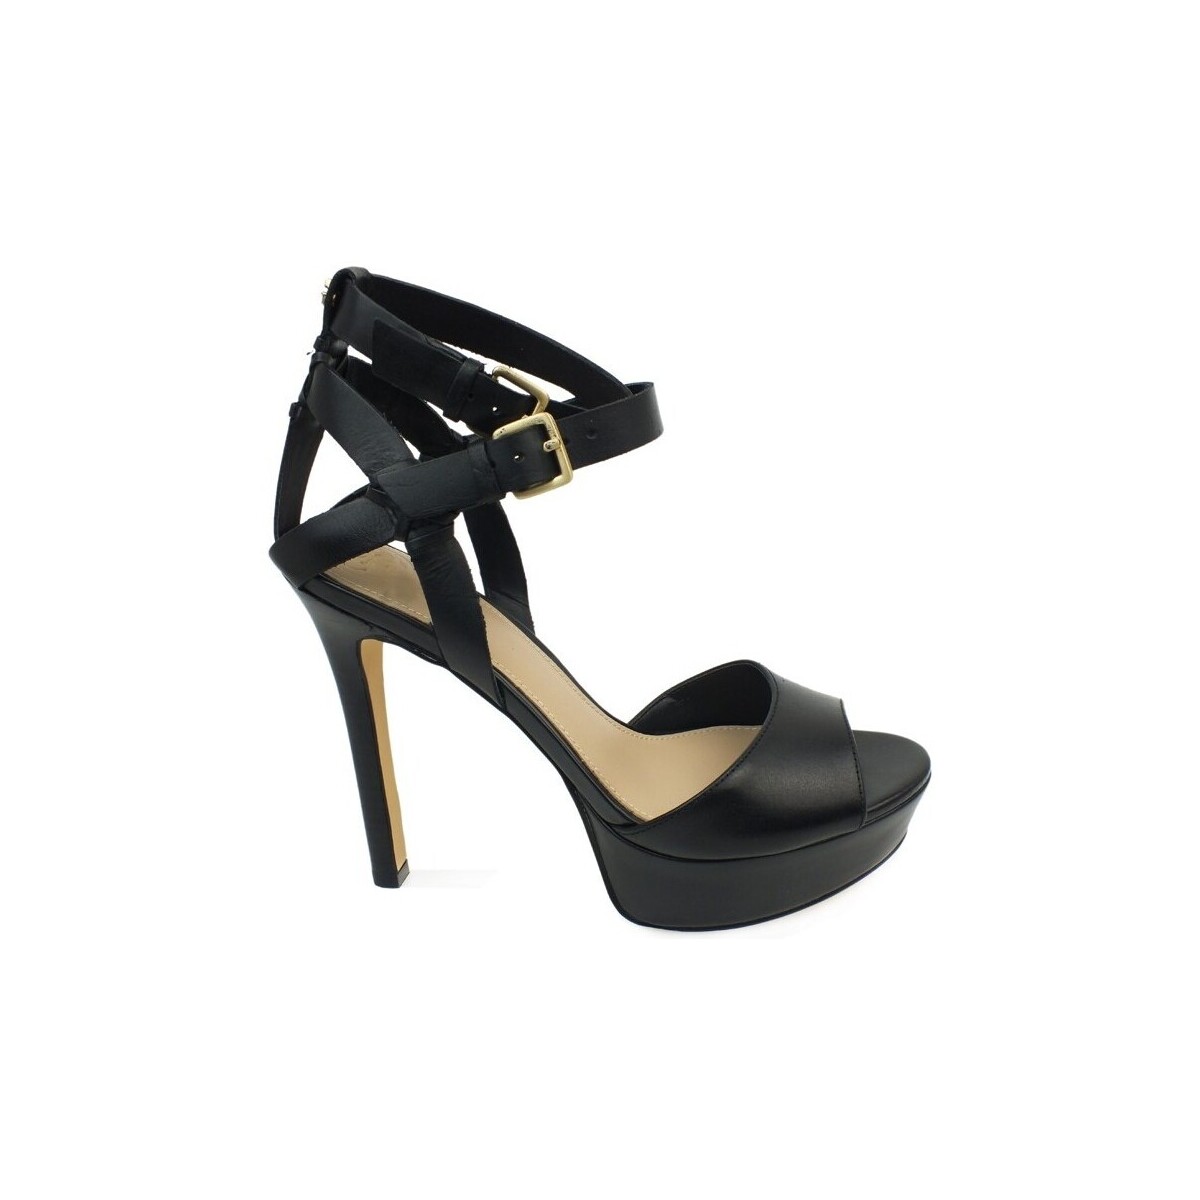 Chaussures Femme Bottes Guess Sandalo Black FL6LAHLEA03 Noir